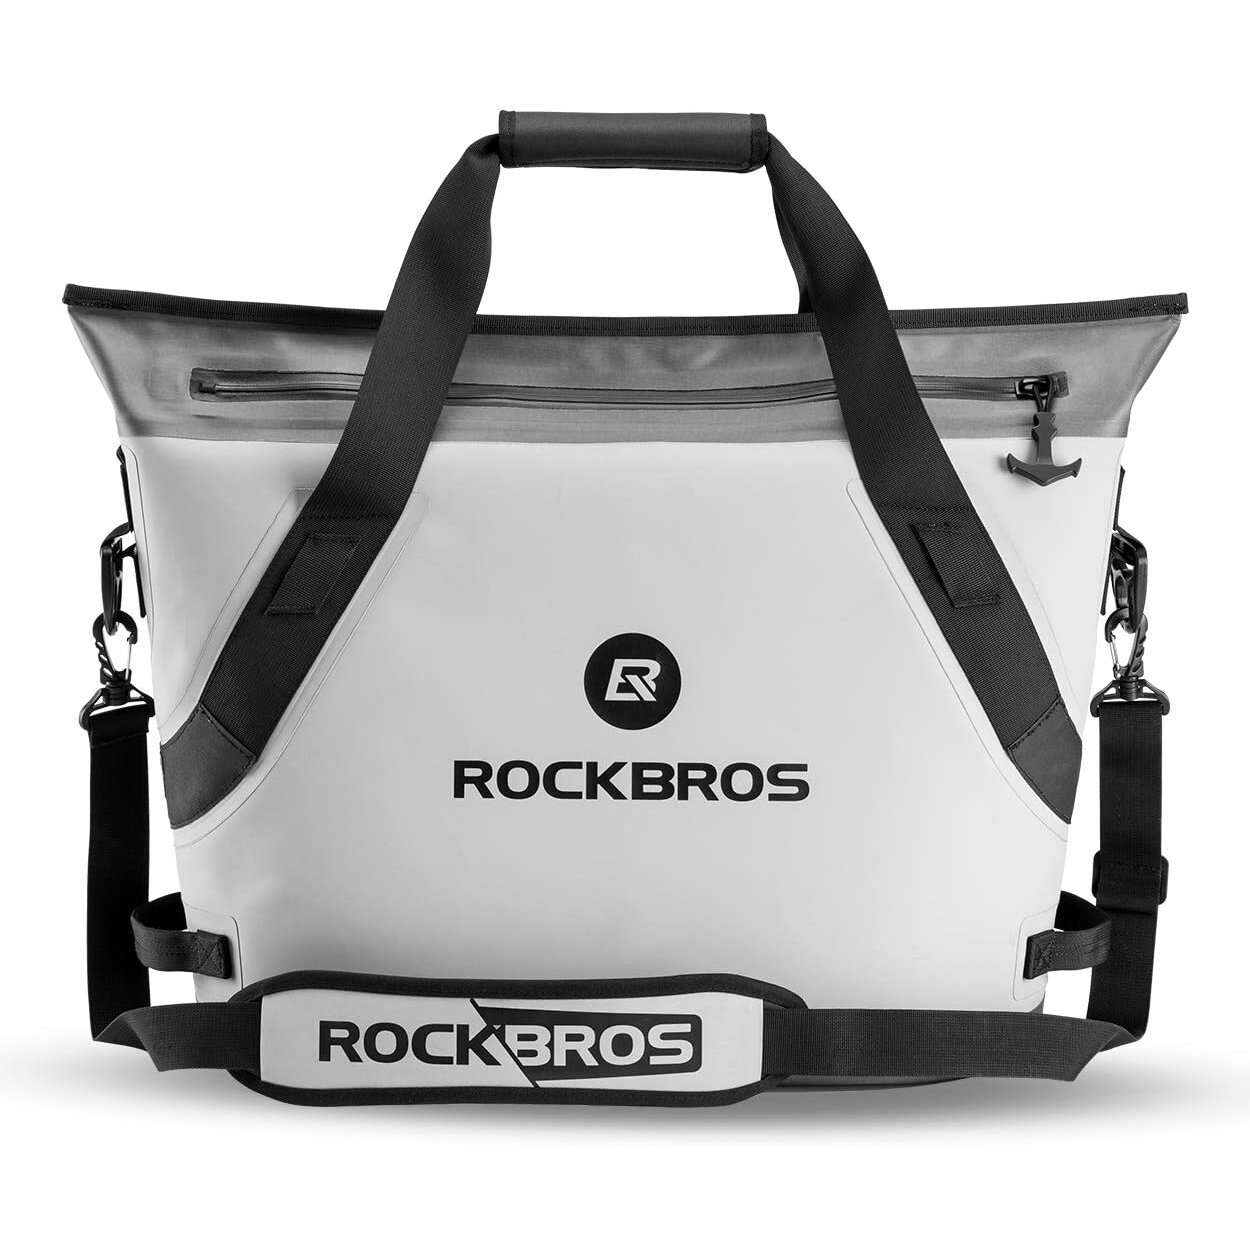 Τσάντα ψύξης ROCKBROS BX-003 22L αδιάβροχη τσάντα πάγου τσάντα για μεσημεριανό κάμπινγκ πικνίκ φύλλο θερμικά μονωμένη τσάντα χειρός.